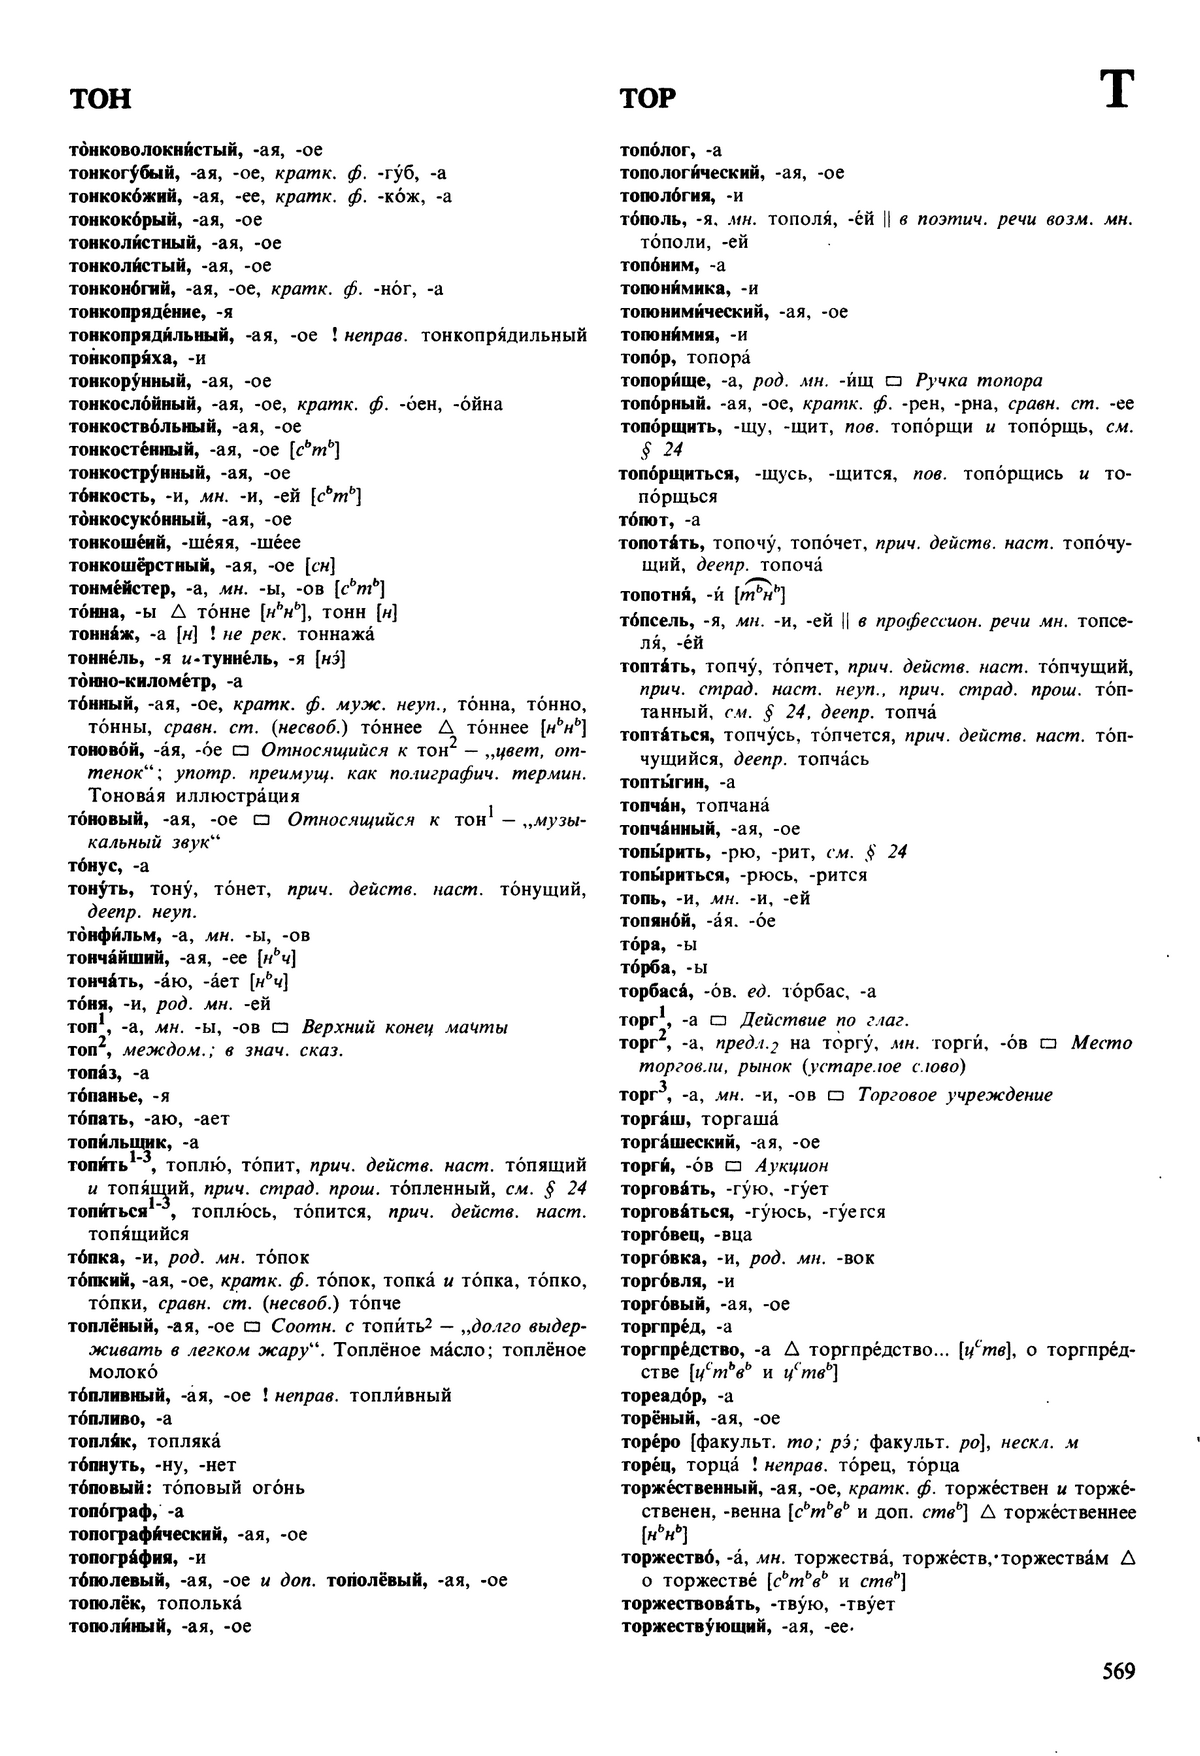 Фотокопия pdf / скан страницы 569 орфоэпического словаря под редакцией Аванесова (5 издание, 1989 год)